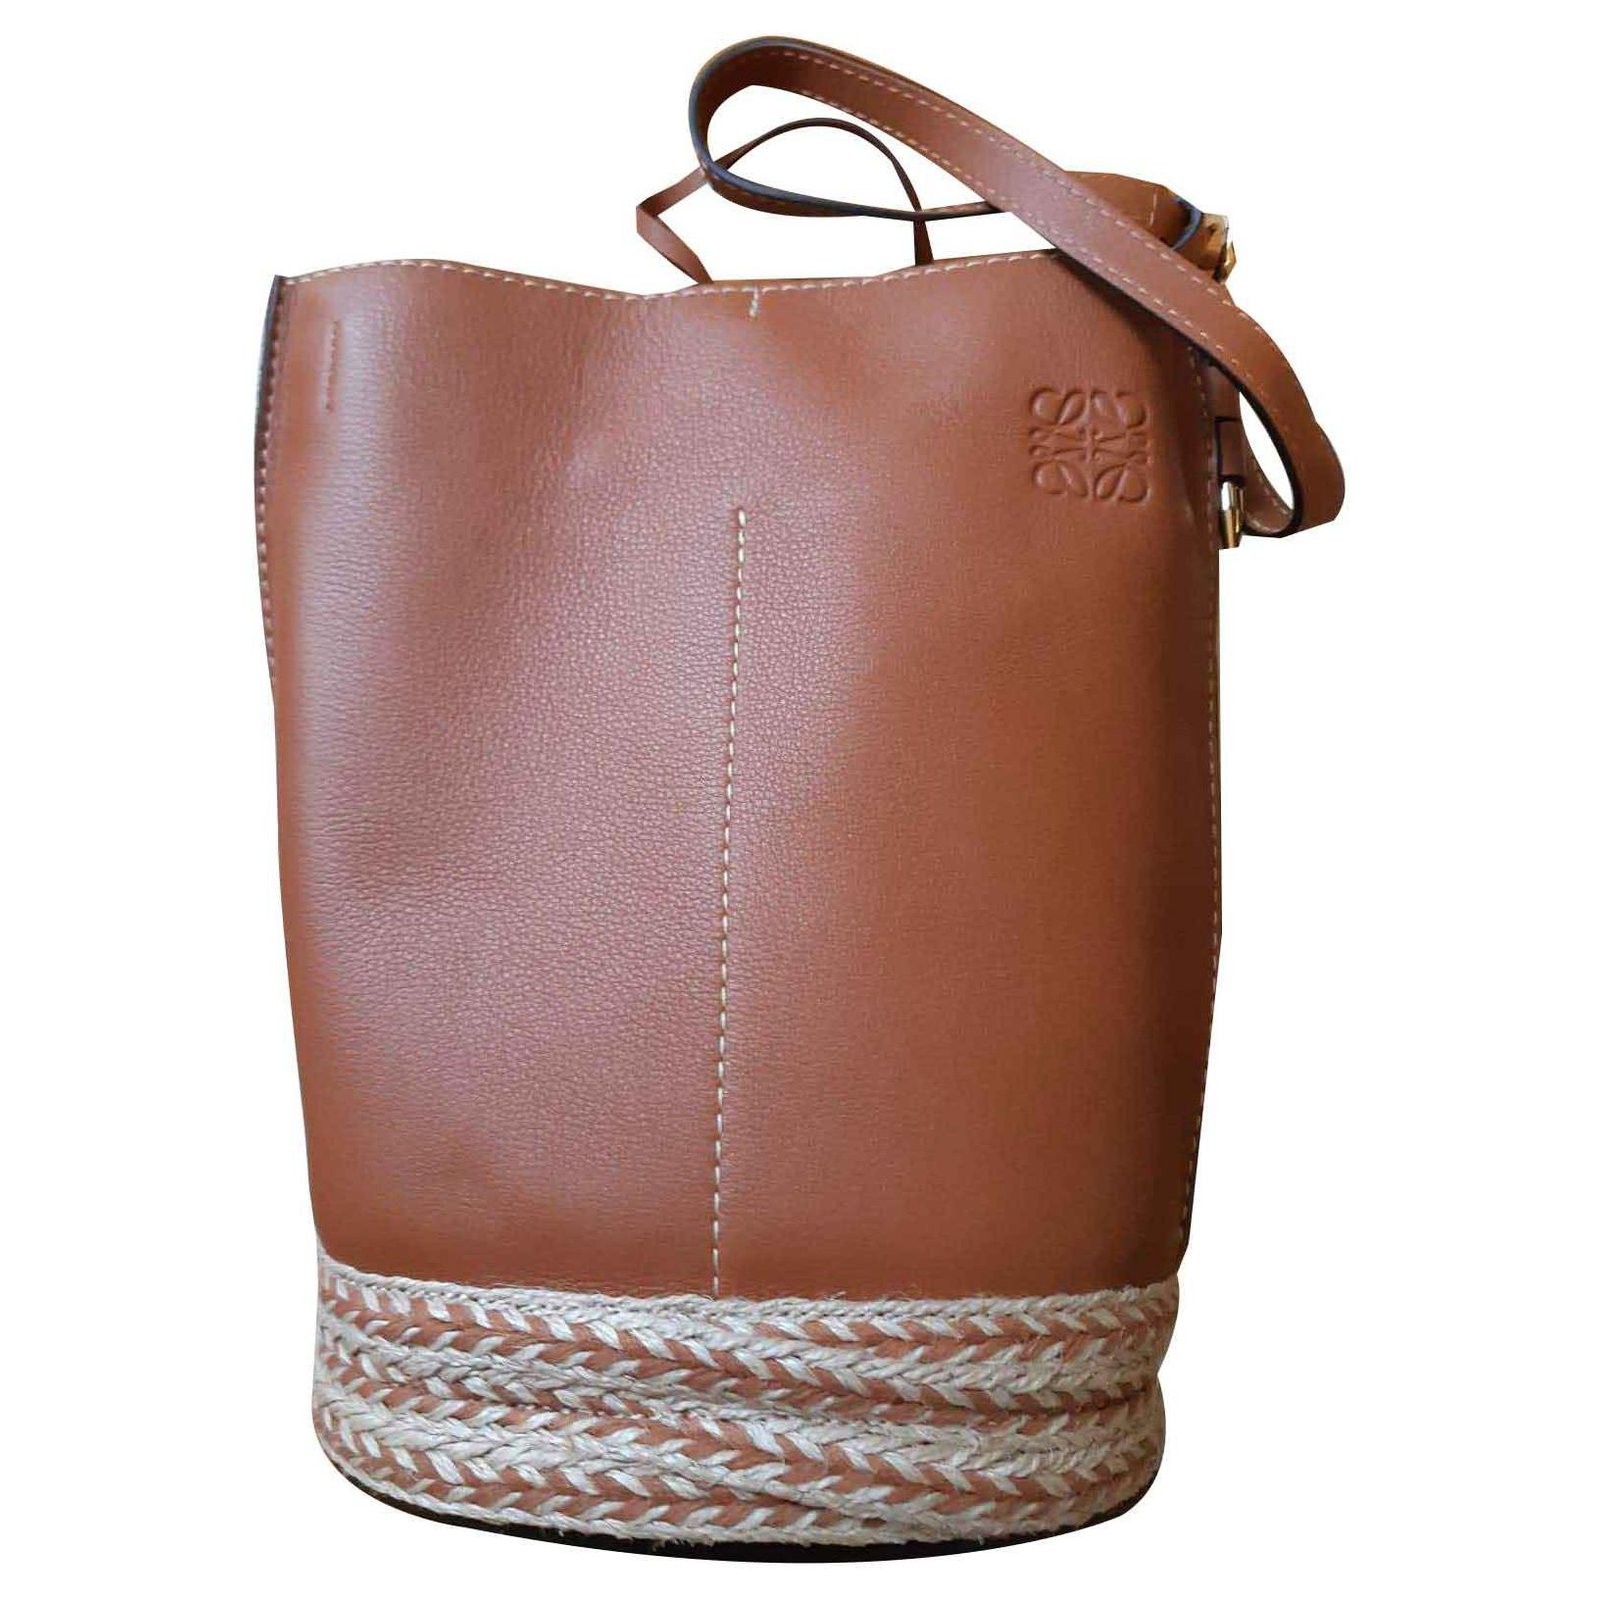 Loewe Gate Handle Bucket Bag in Brown